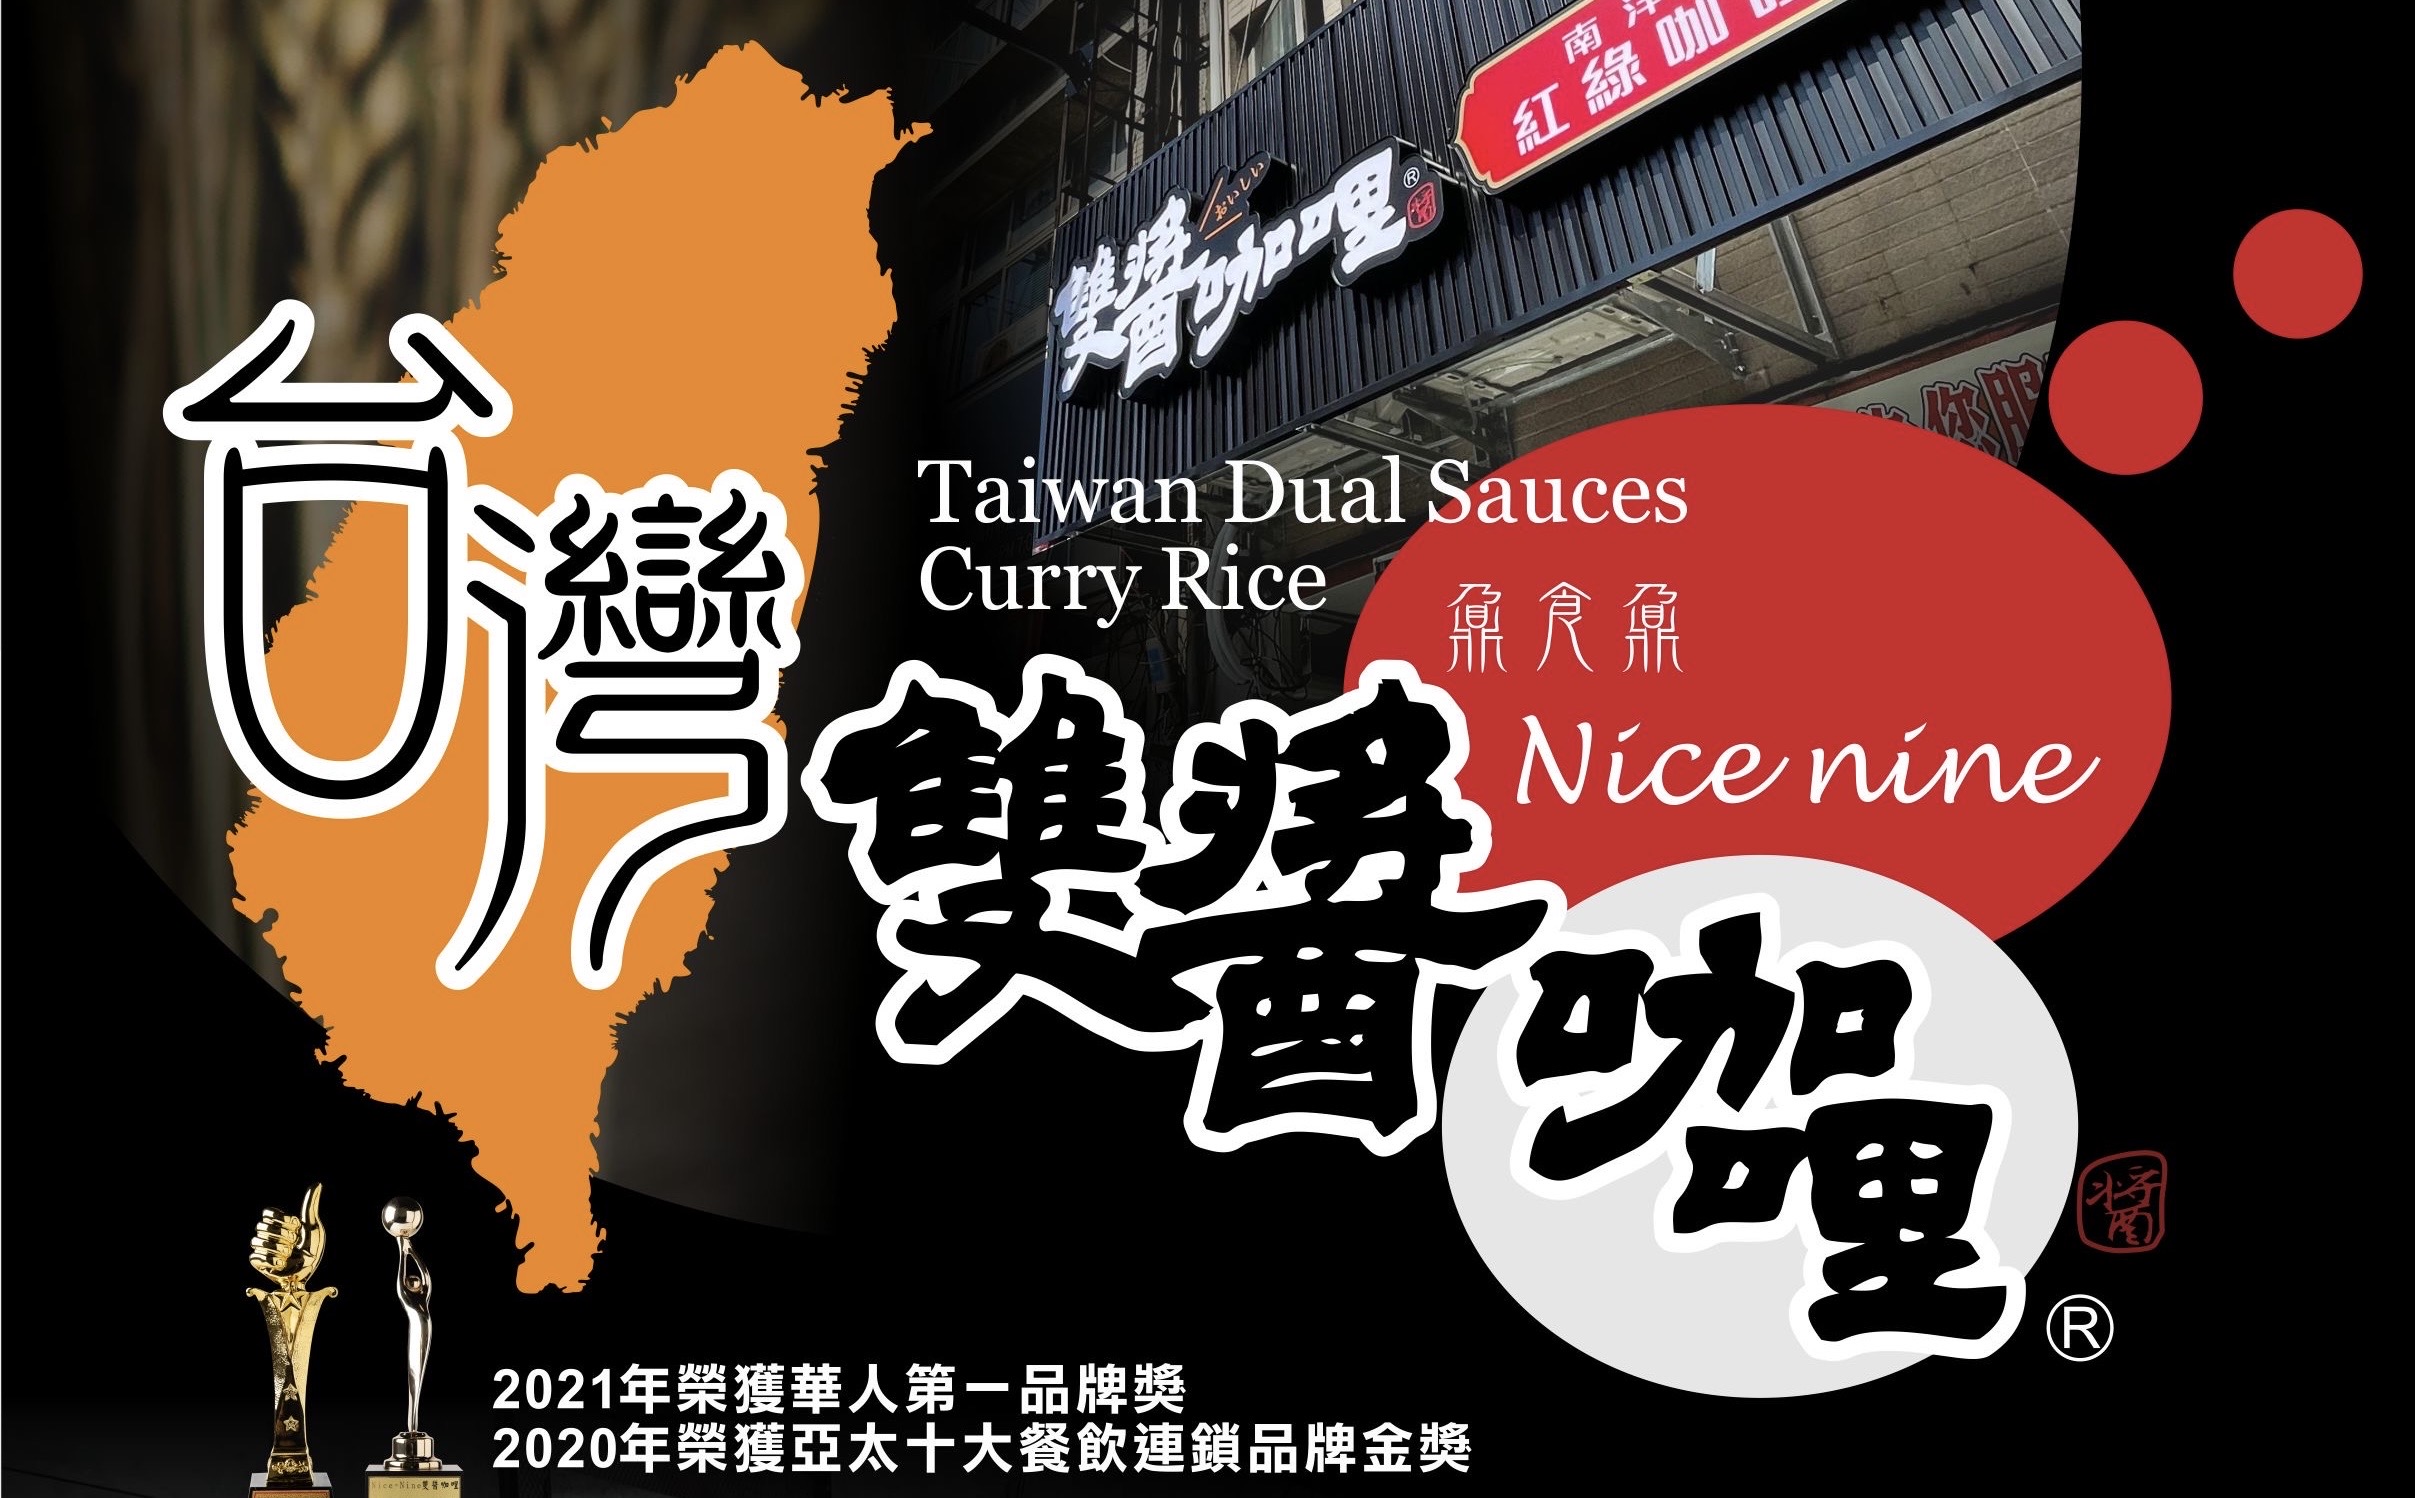 台灣雙醬咖哩有限公司